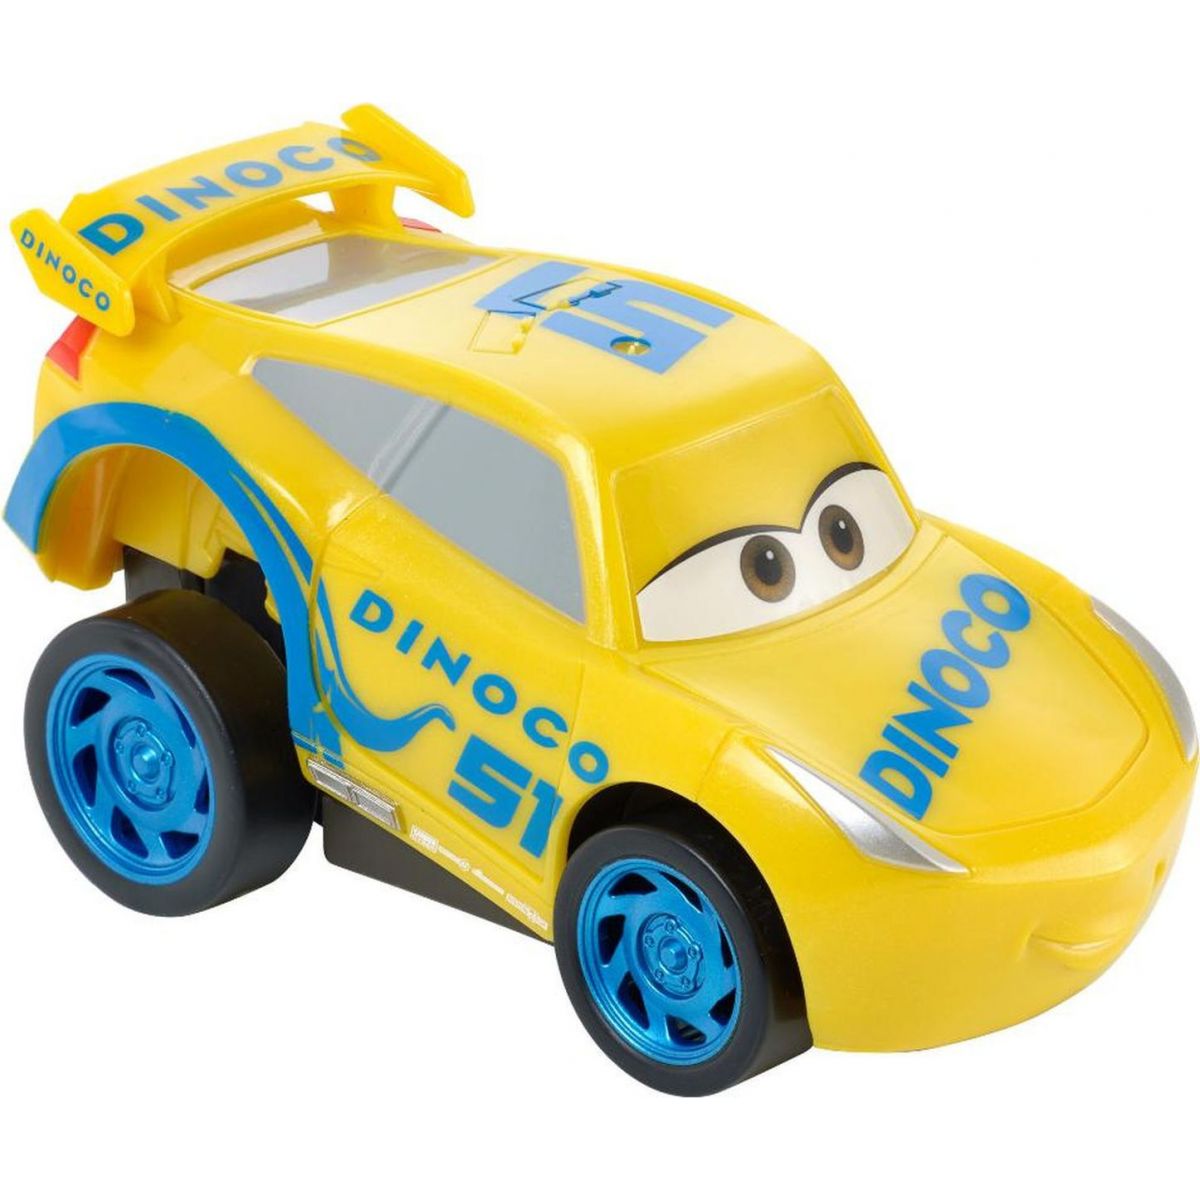 Mattel Cars 3 natahovací auta Dinoco Cruz Ramirez